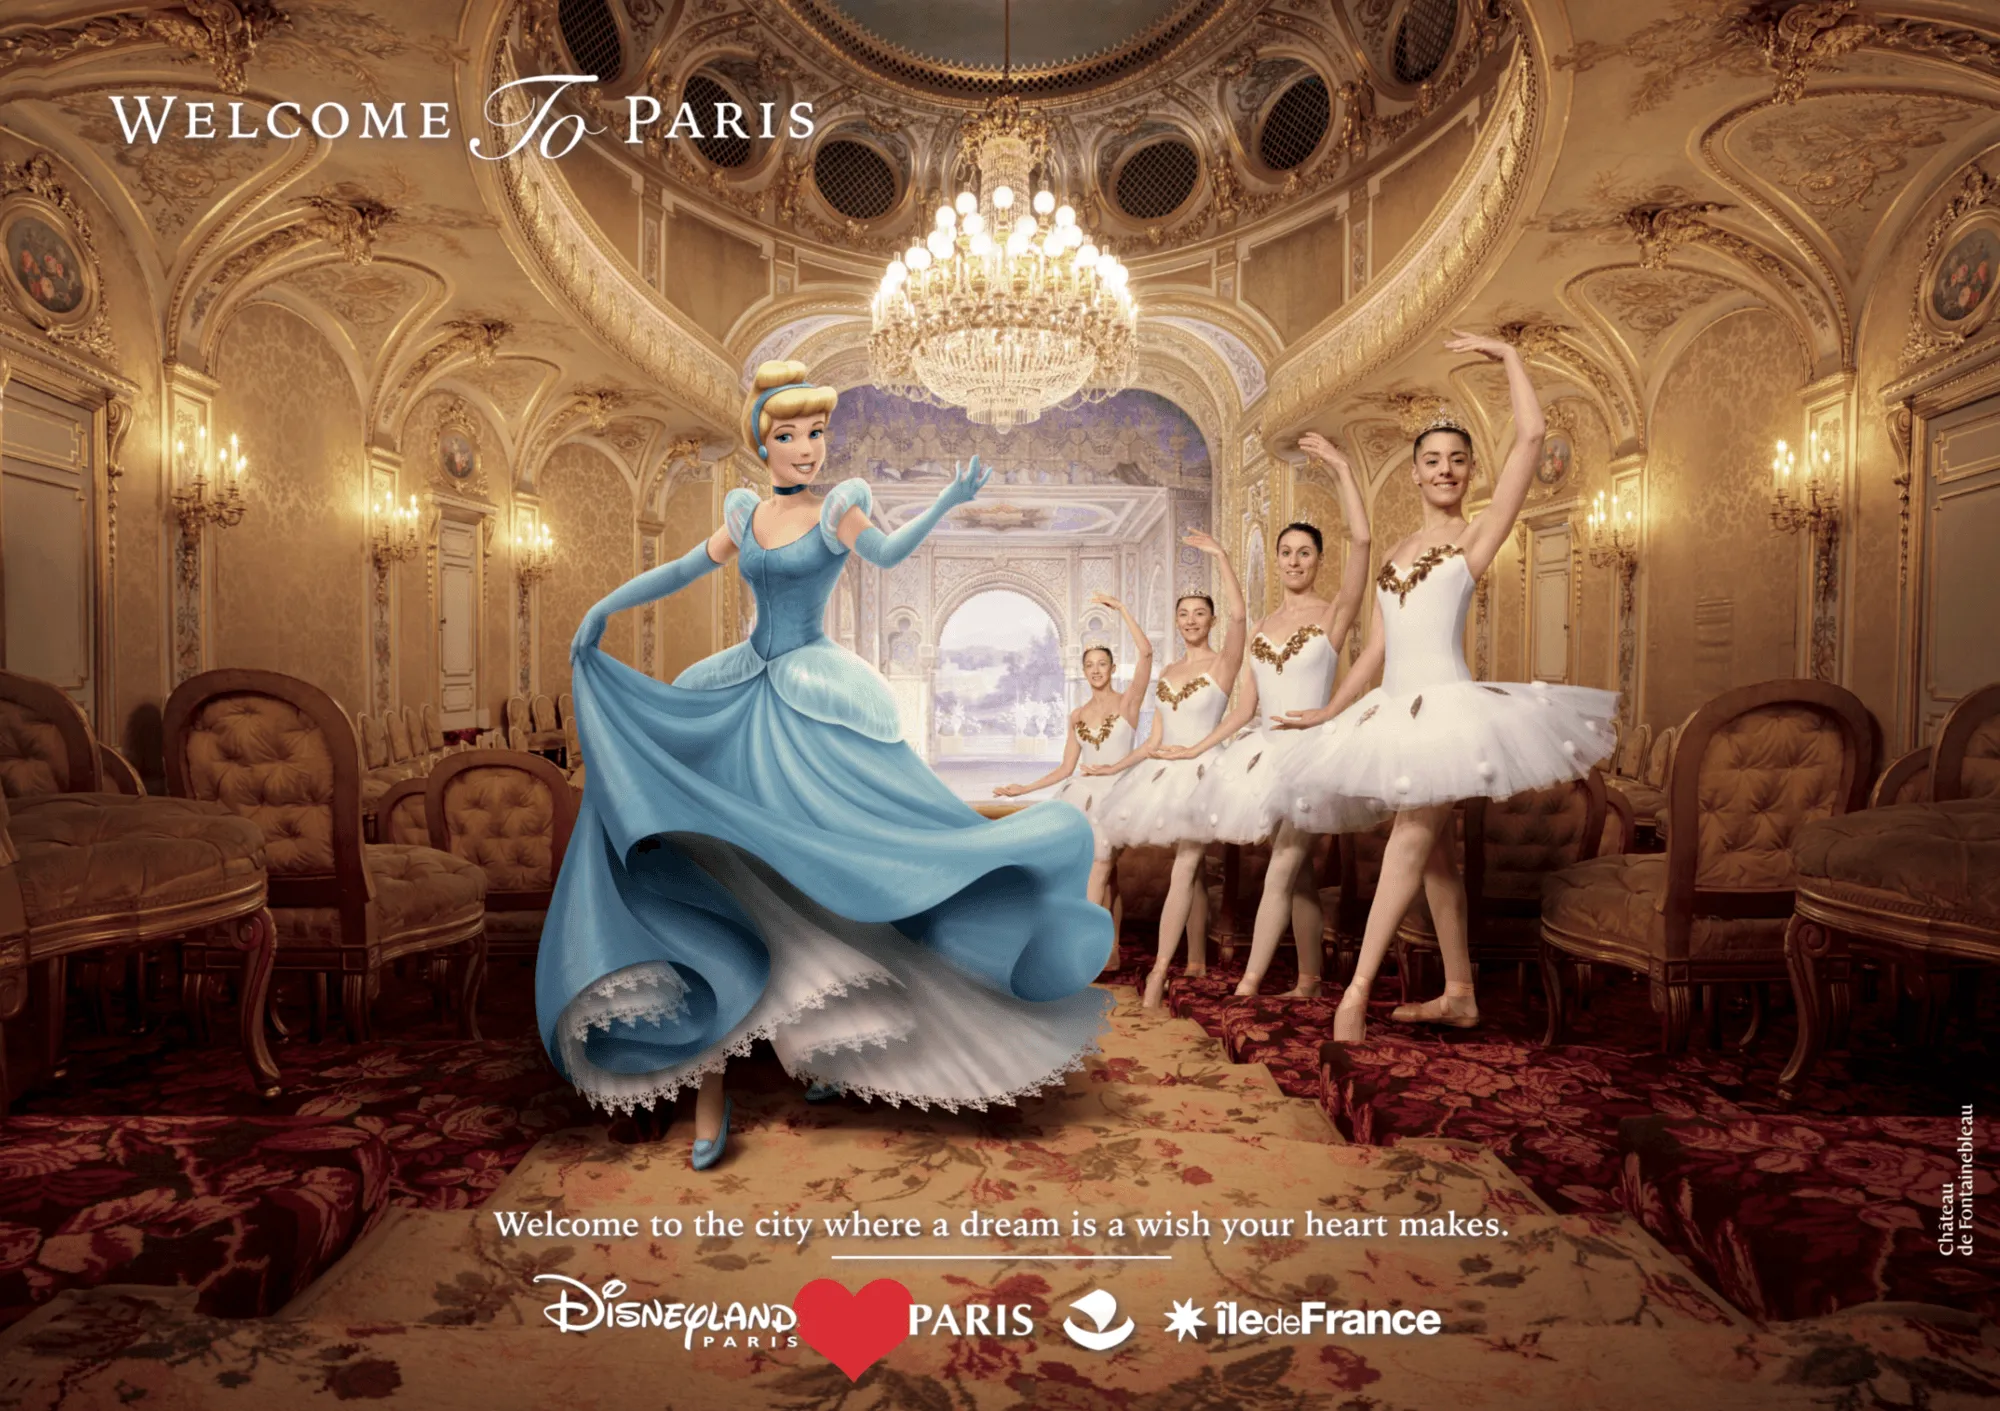 Campagne de marketing réalisée par Disneyland Paris, la Ville de Paris et la Région Île-de-France en 2017